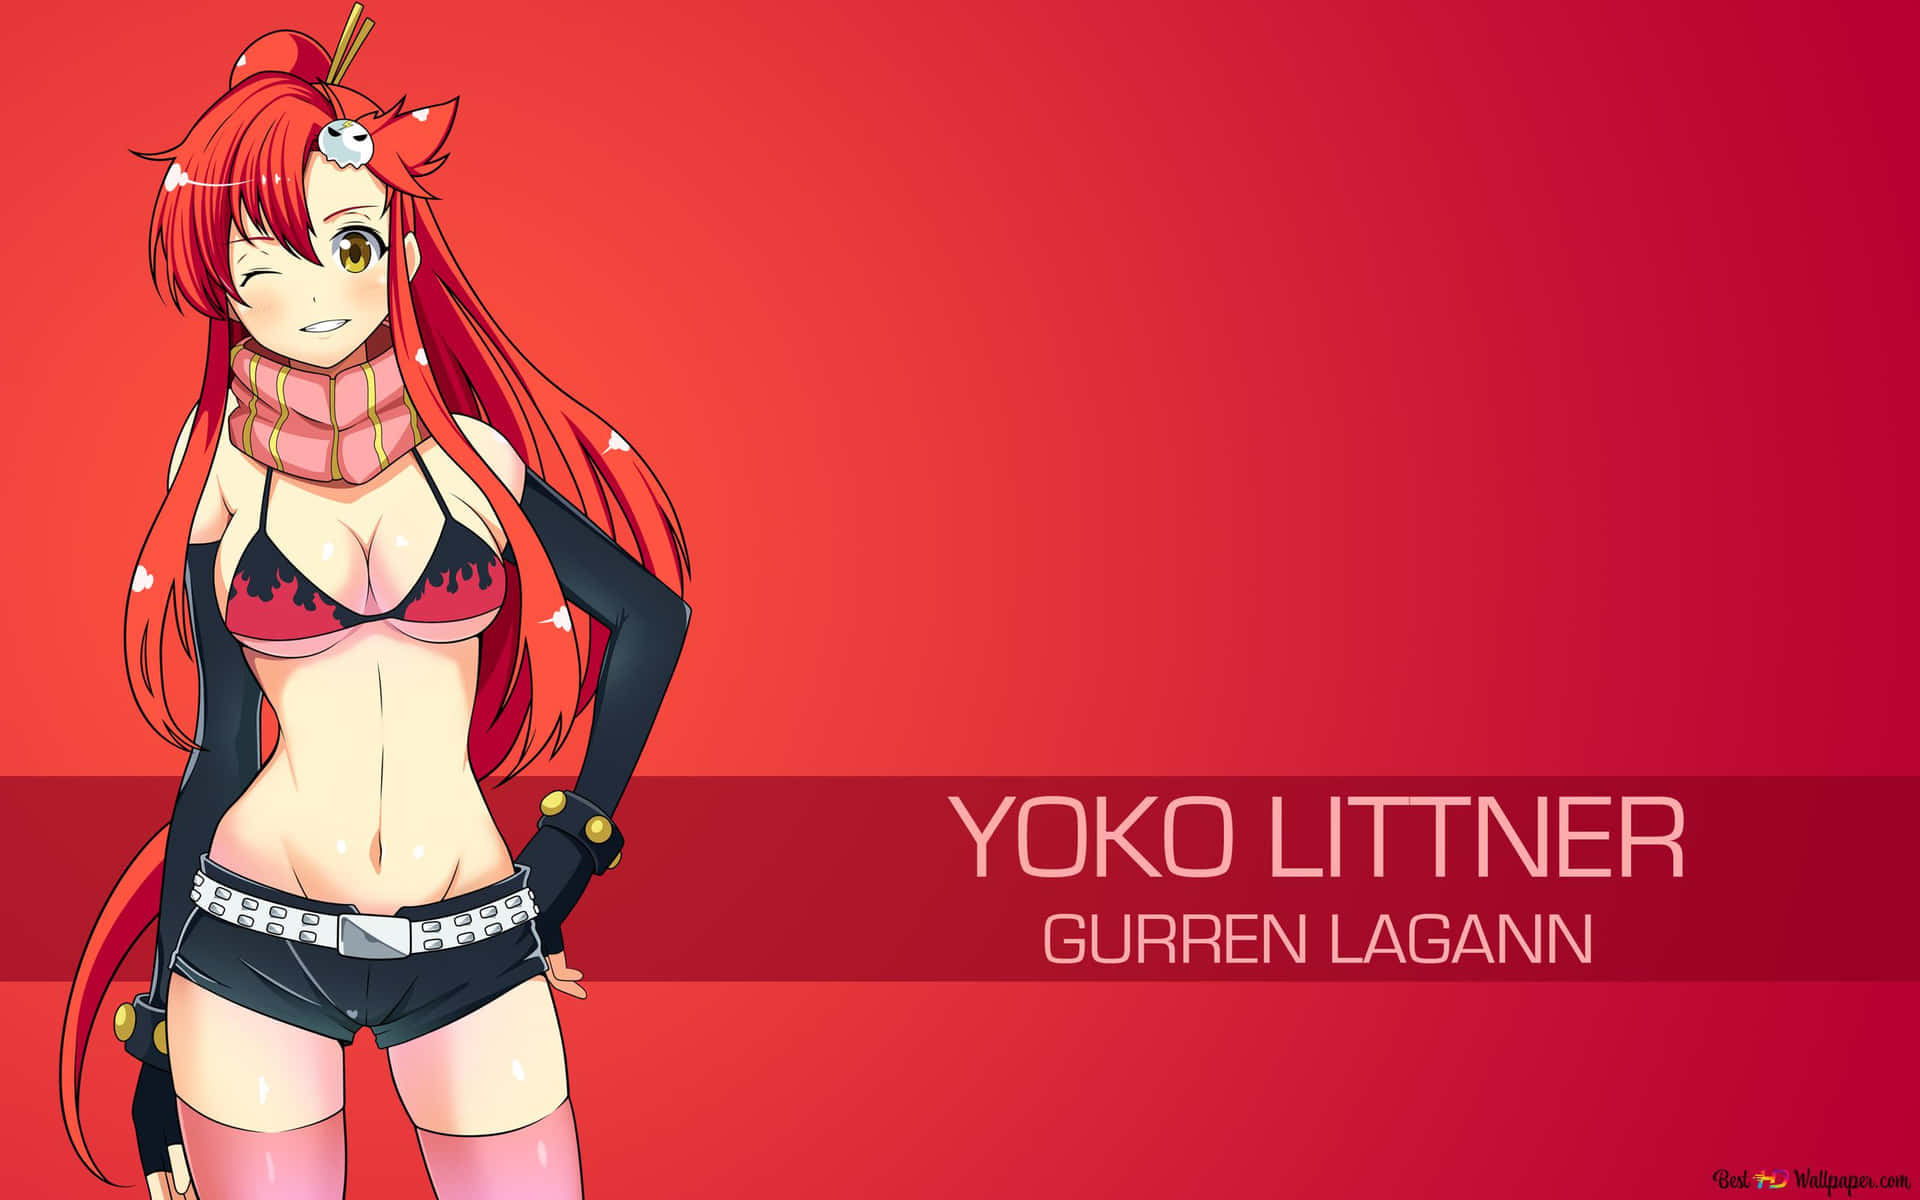 Yoko Littner in Action - Gurren Lagann Anime Character Wallpaper